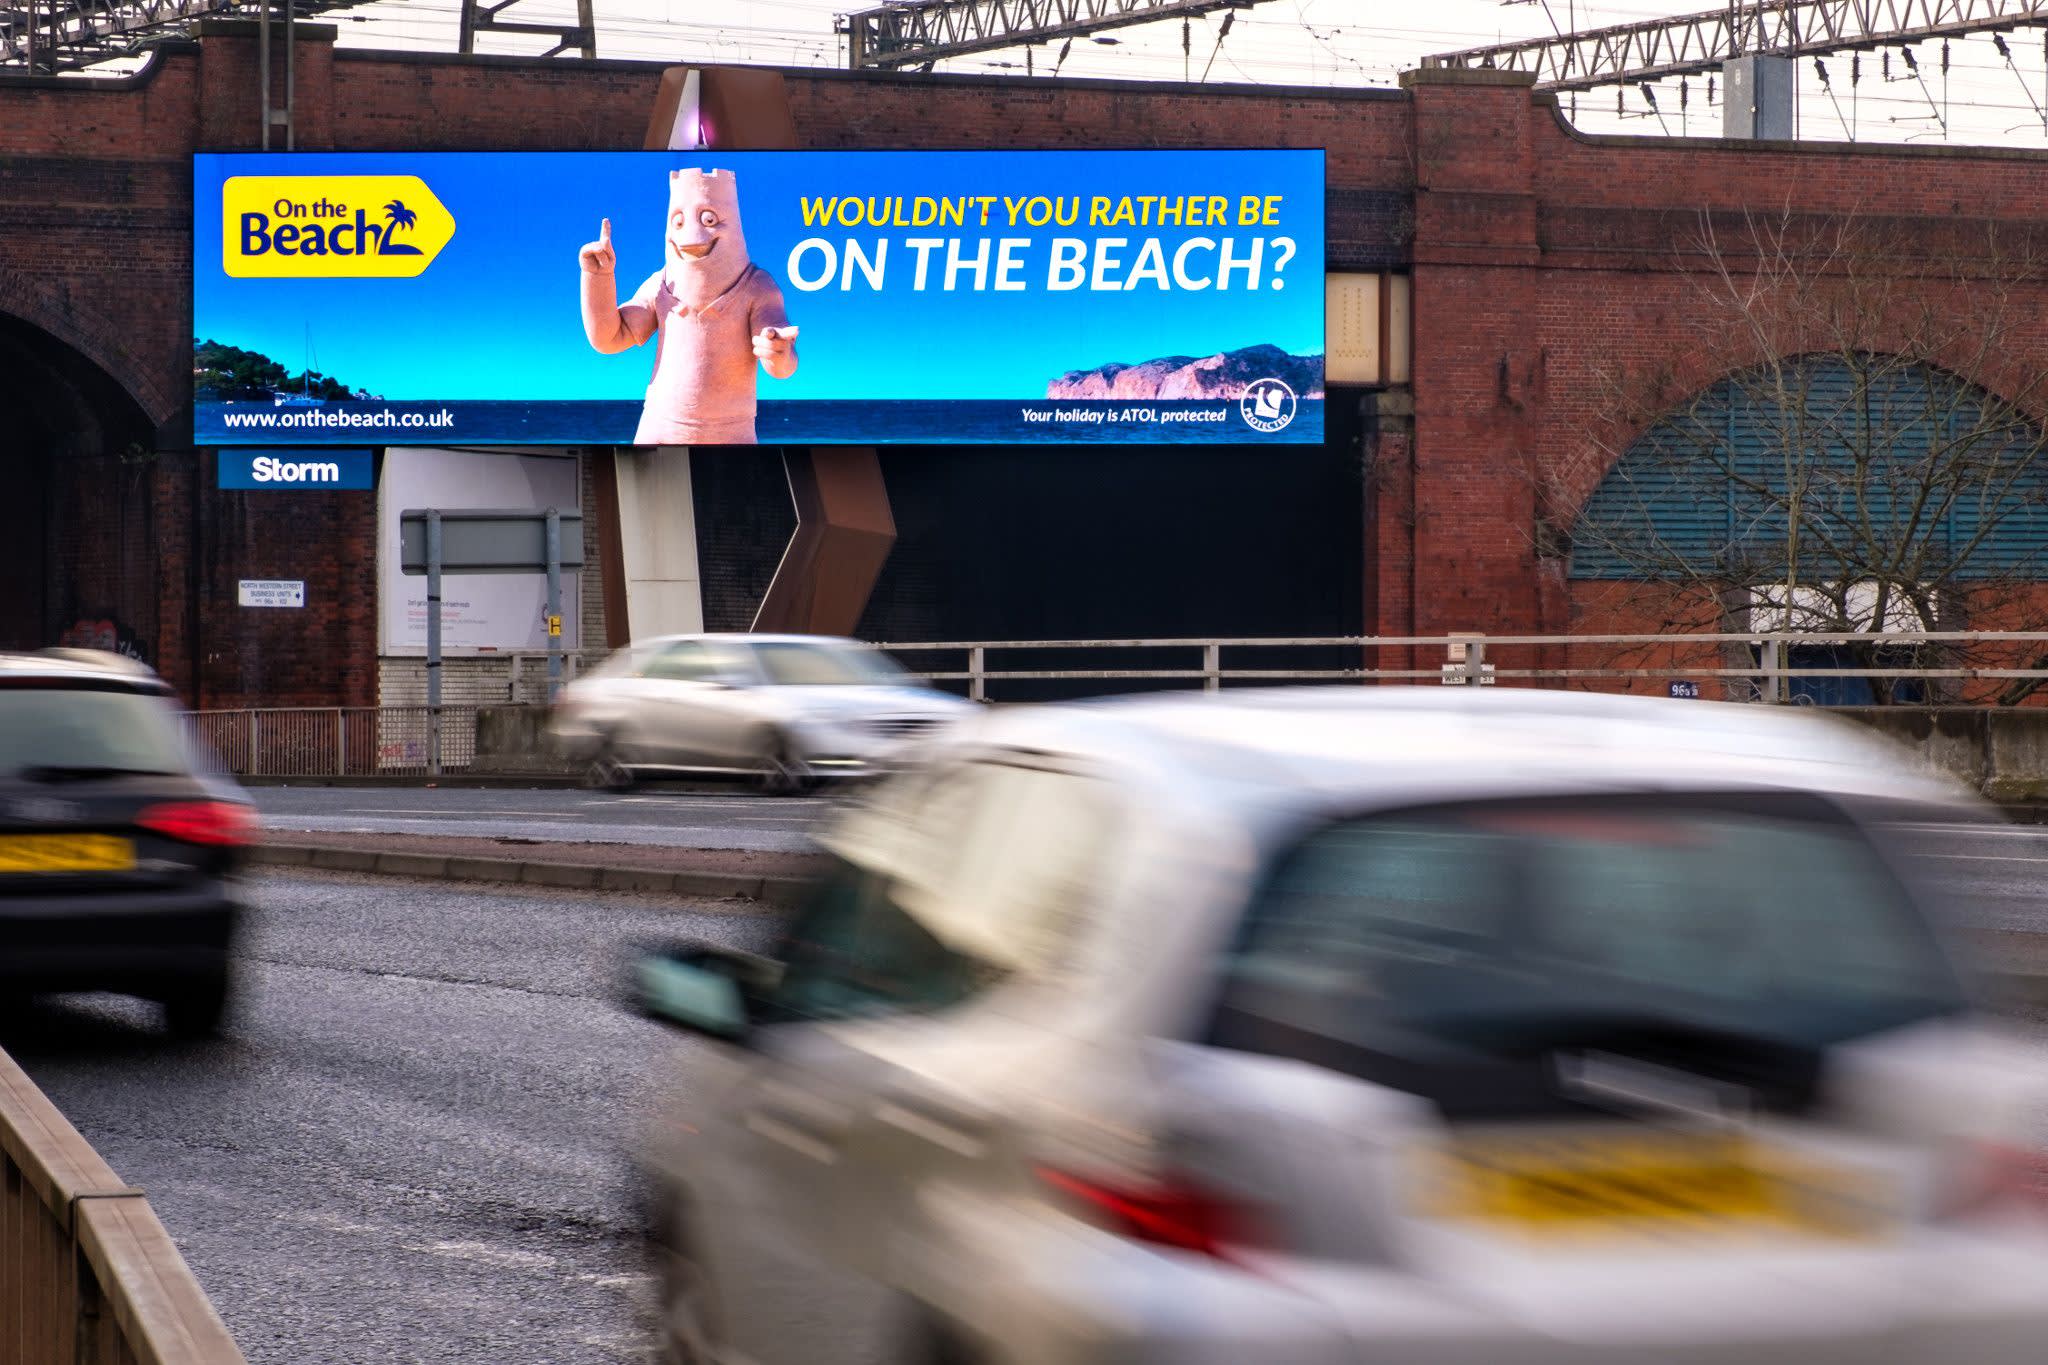 On the Beach roadside billboard ad